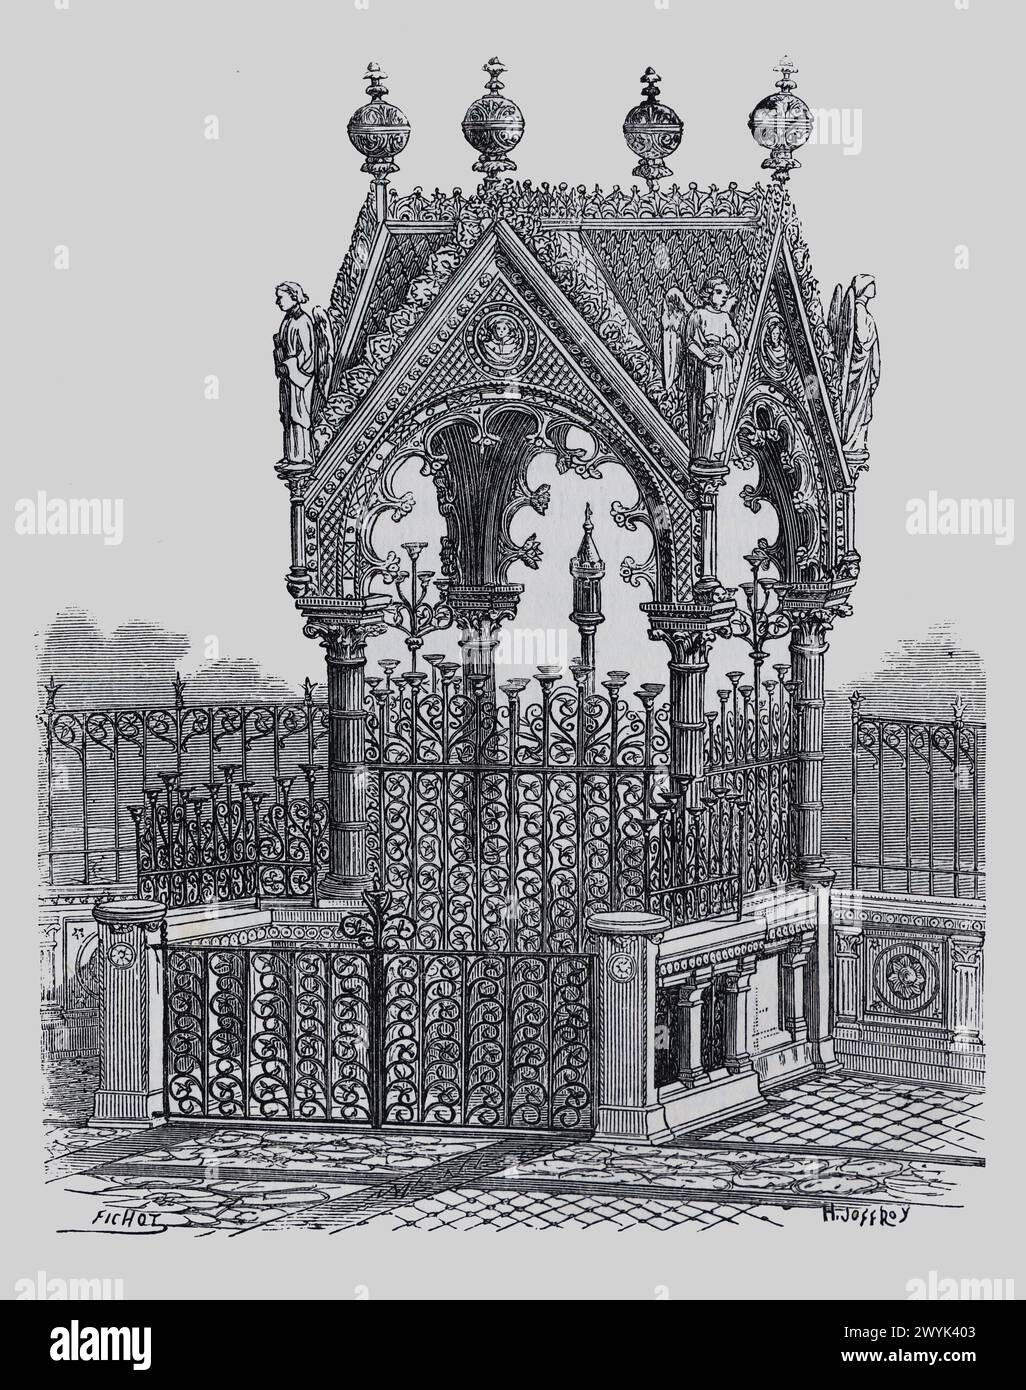 Ciborium (o baldachin) di San Martino a Tours, Francia: Engraving from Lives of the Saints (novembre parte 1) del reverendo Sabin Baring-Gould, pubblicato nel 1898 Foto Stock